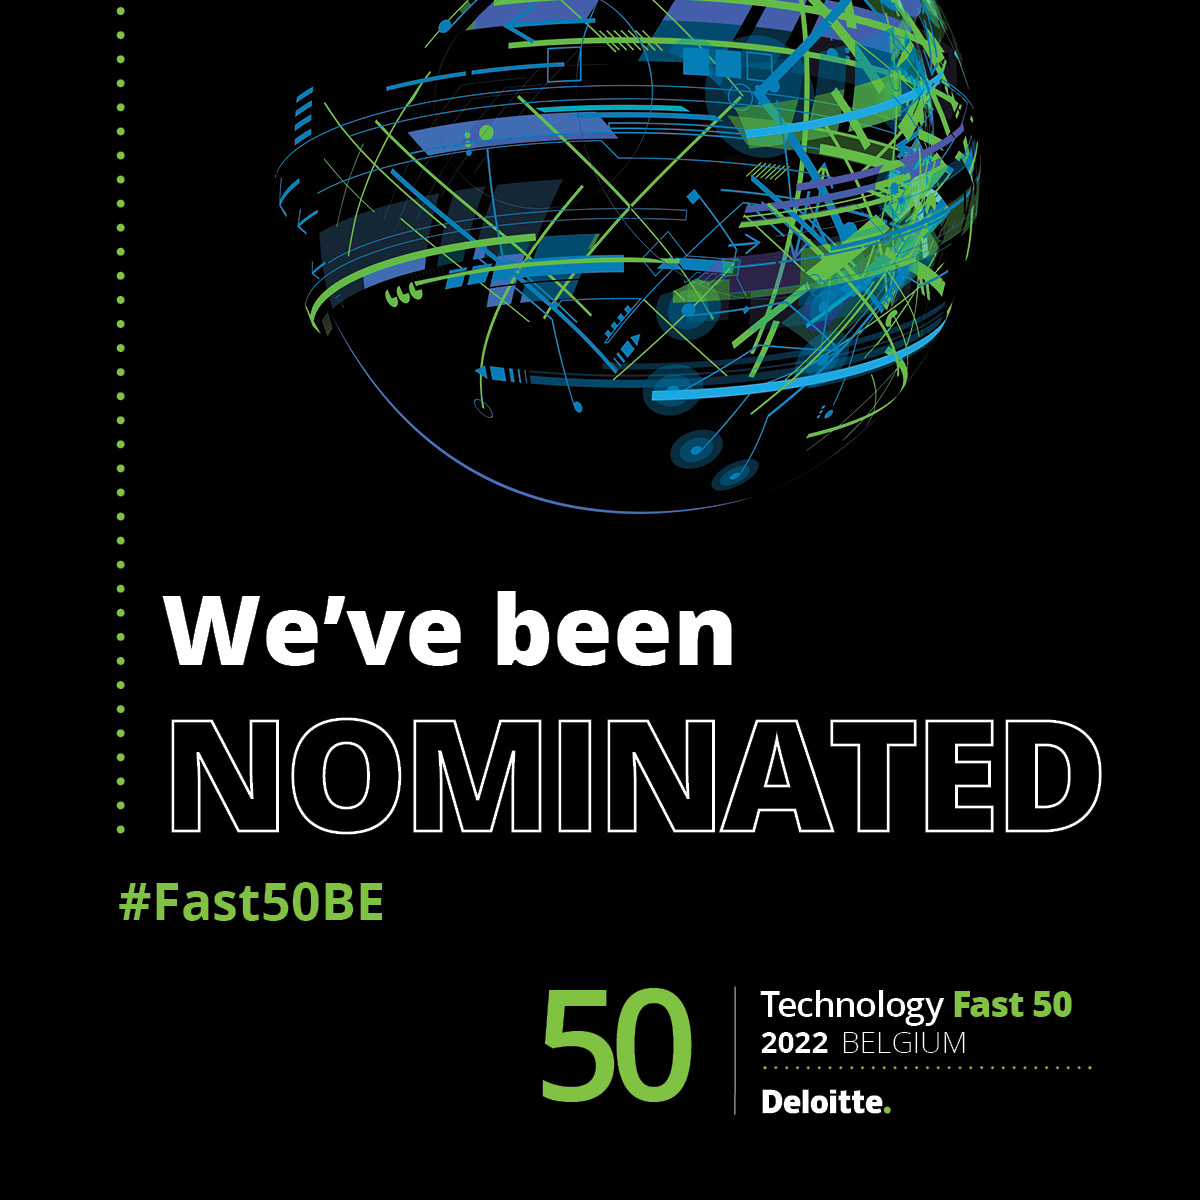 Fast-50-nominee-2022-social-media-card-1080x1080.jpg